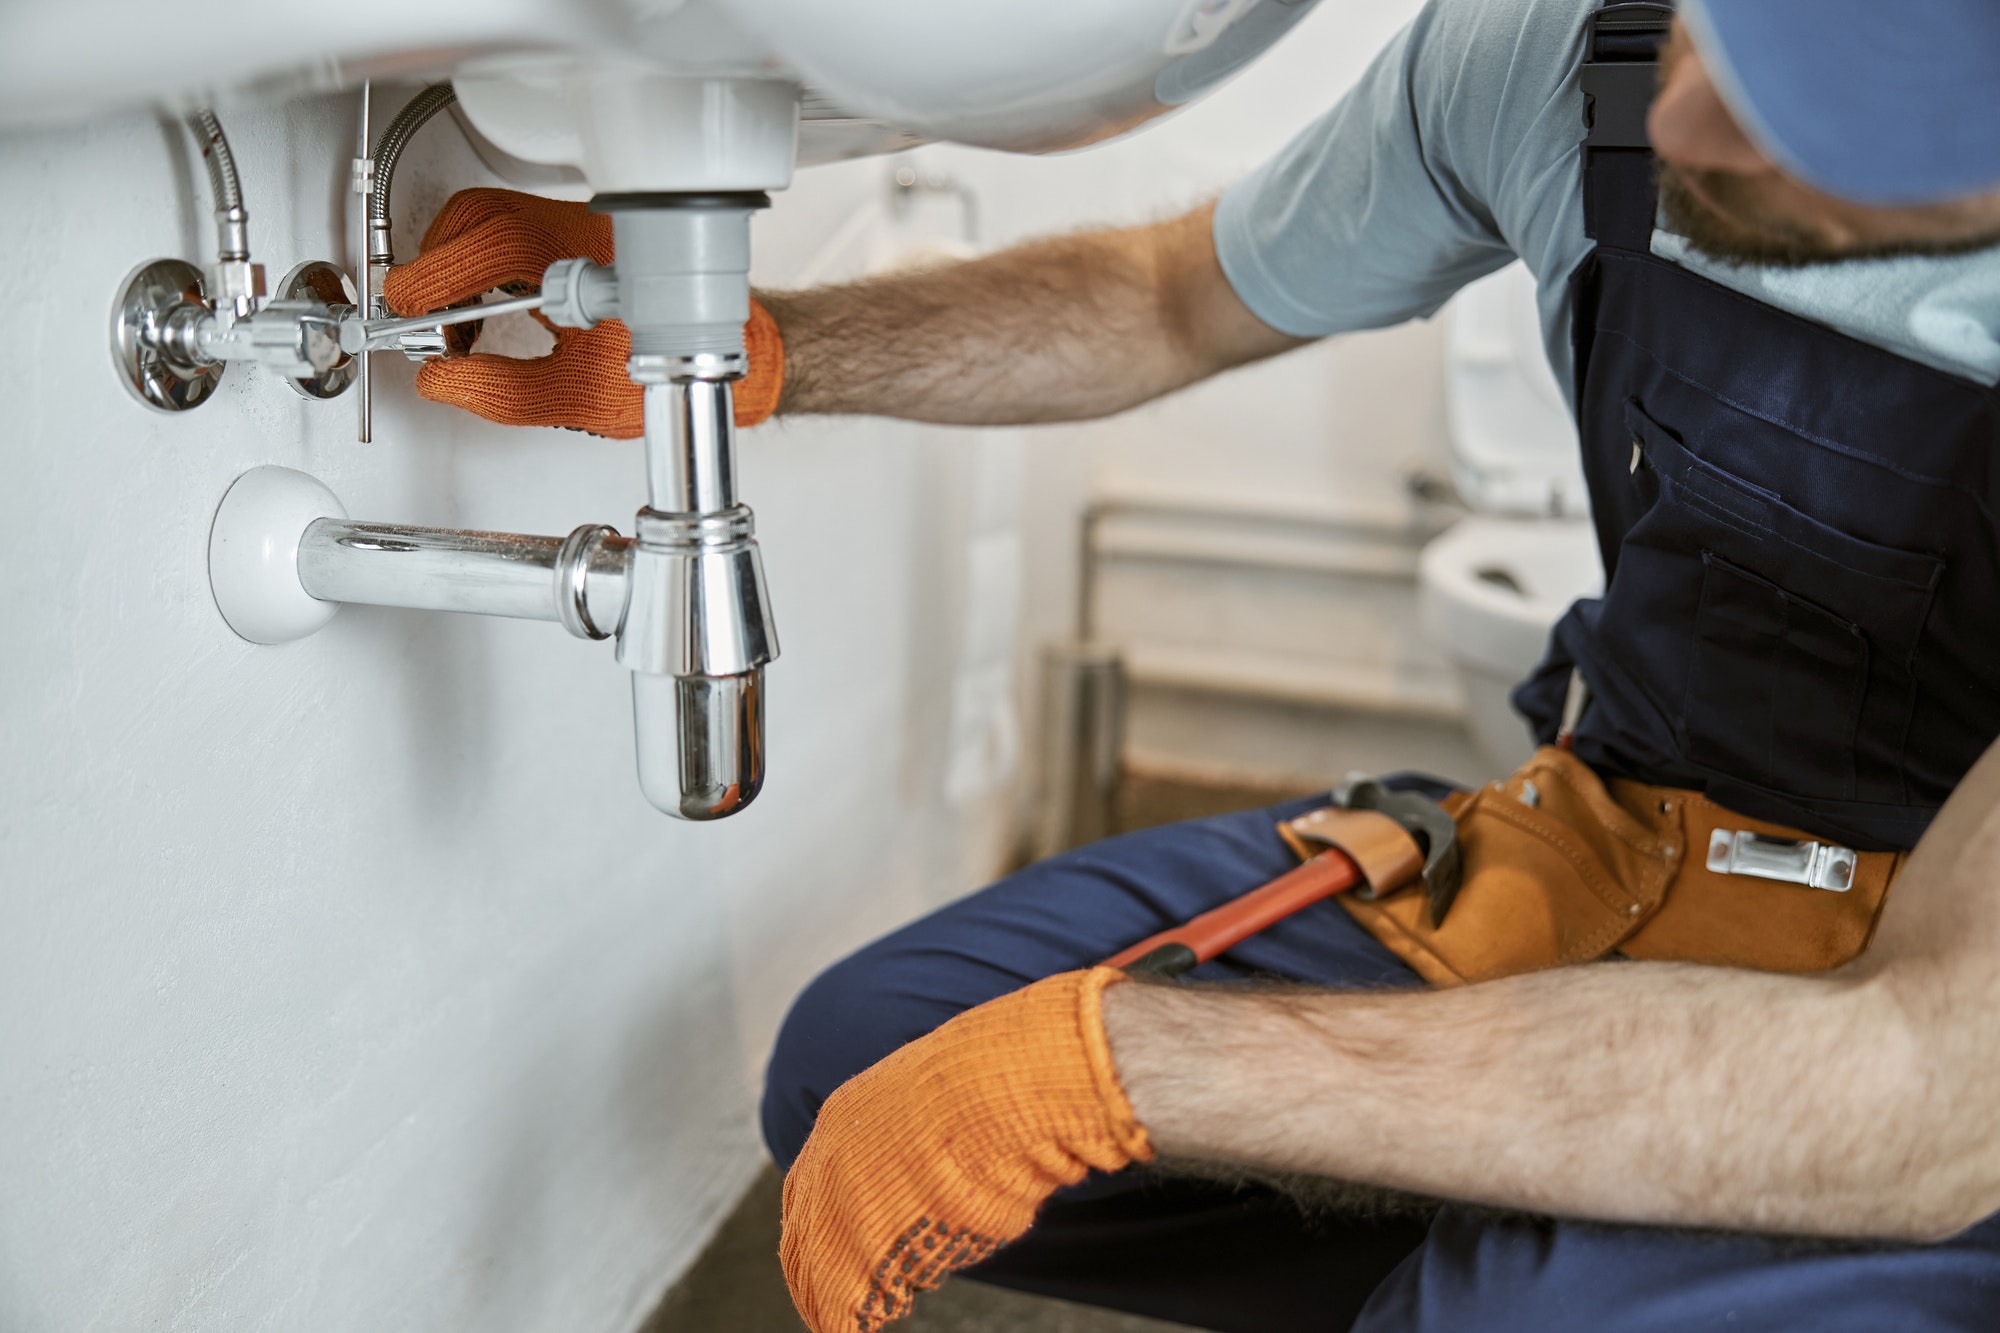 Male plumber hands repairing pipe under sink